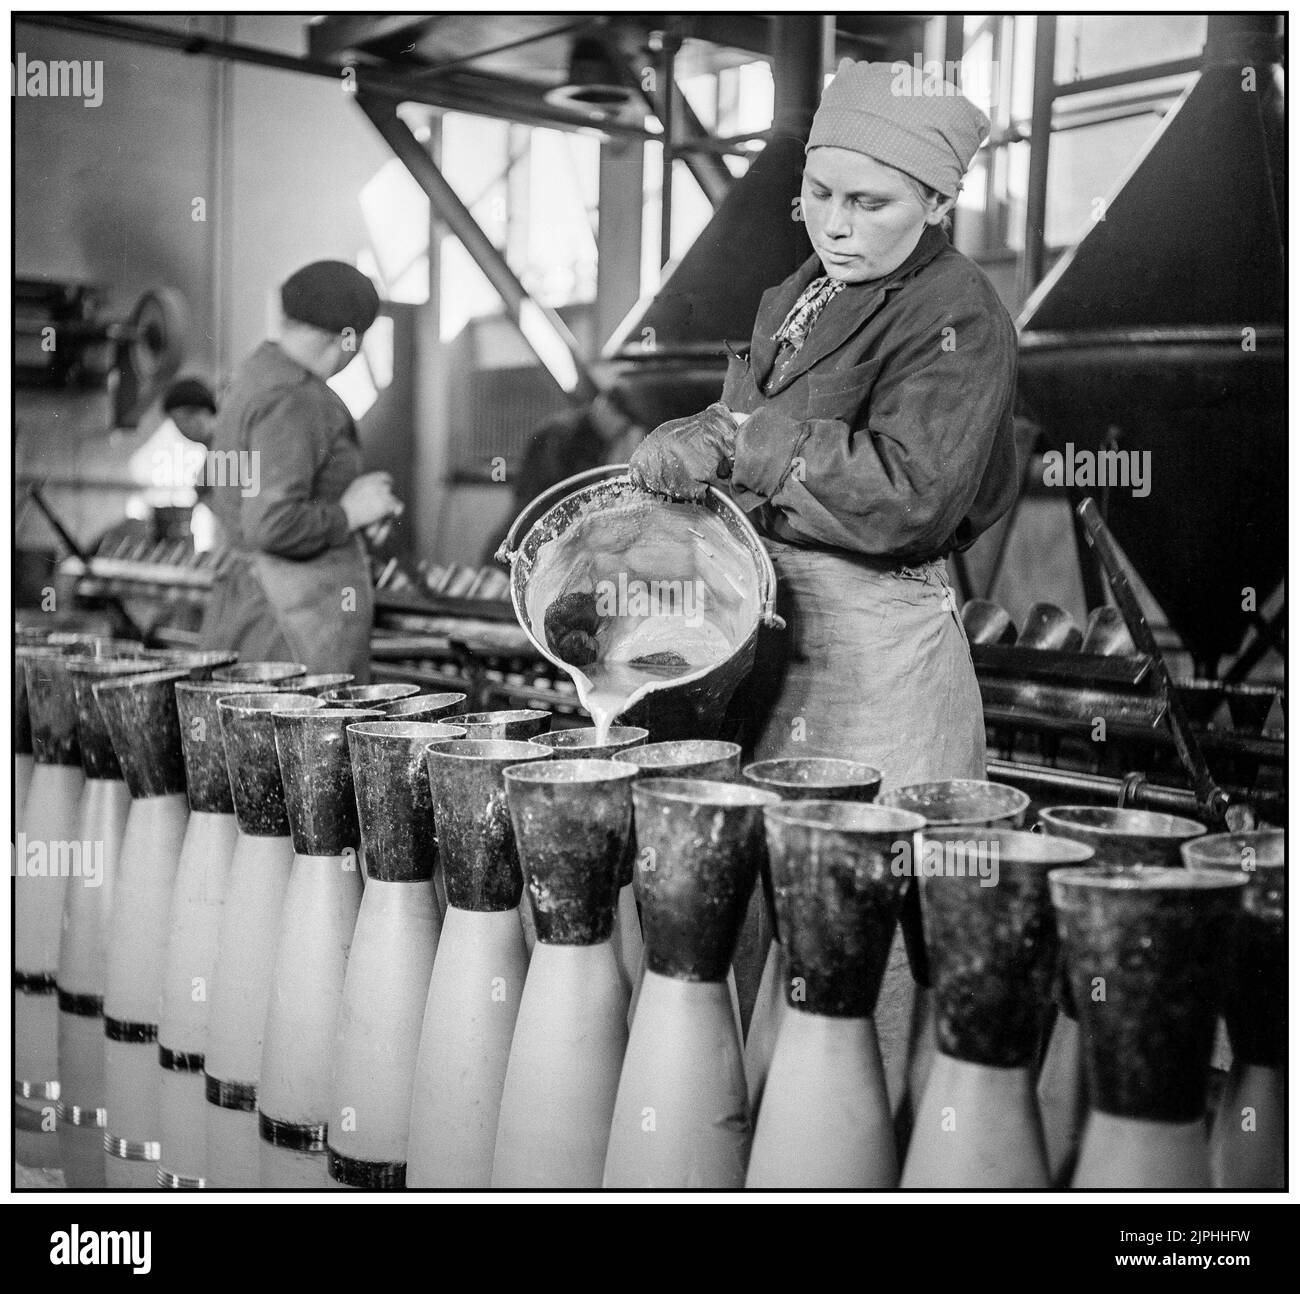 FINLANDE PRODUCTION MILITAIRE 152mm production de coquillages en Finlande 1942s Seconde Guerre mondiale le déversement de liquide Amatol .Amatol est un matériau très explosif fabriqué à partir d'un mélange de TNT et de nitrate d'ammonium le nom britannique provient des mots ammonium et toluène (le précurseur de TNT). Des mélanges similaires (une partie de dinitronaphthalène et sept parties de nitrate d'ammonium) ont été connus sous le nom de Schneiderite en France. Amatol a été largement utilisé pendant la première Guerre mondiale et la Seconde Guerre mondiale, typiquement comme un explosif dans les armes militaires telles que des bombes d'avion, des obus, des charges de profondeur, et des mines navales. Banque D'Images